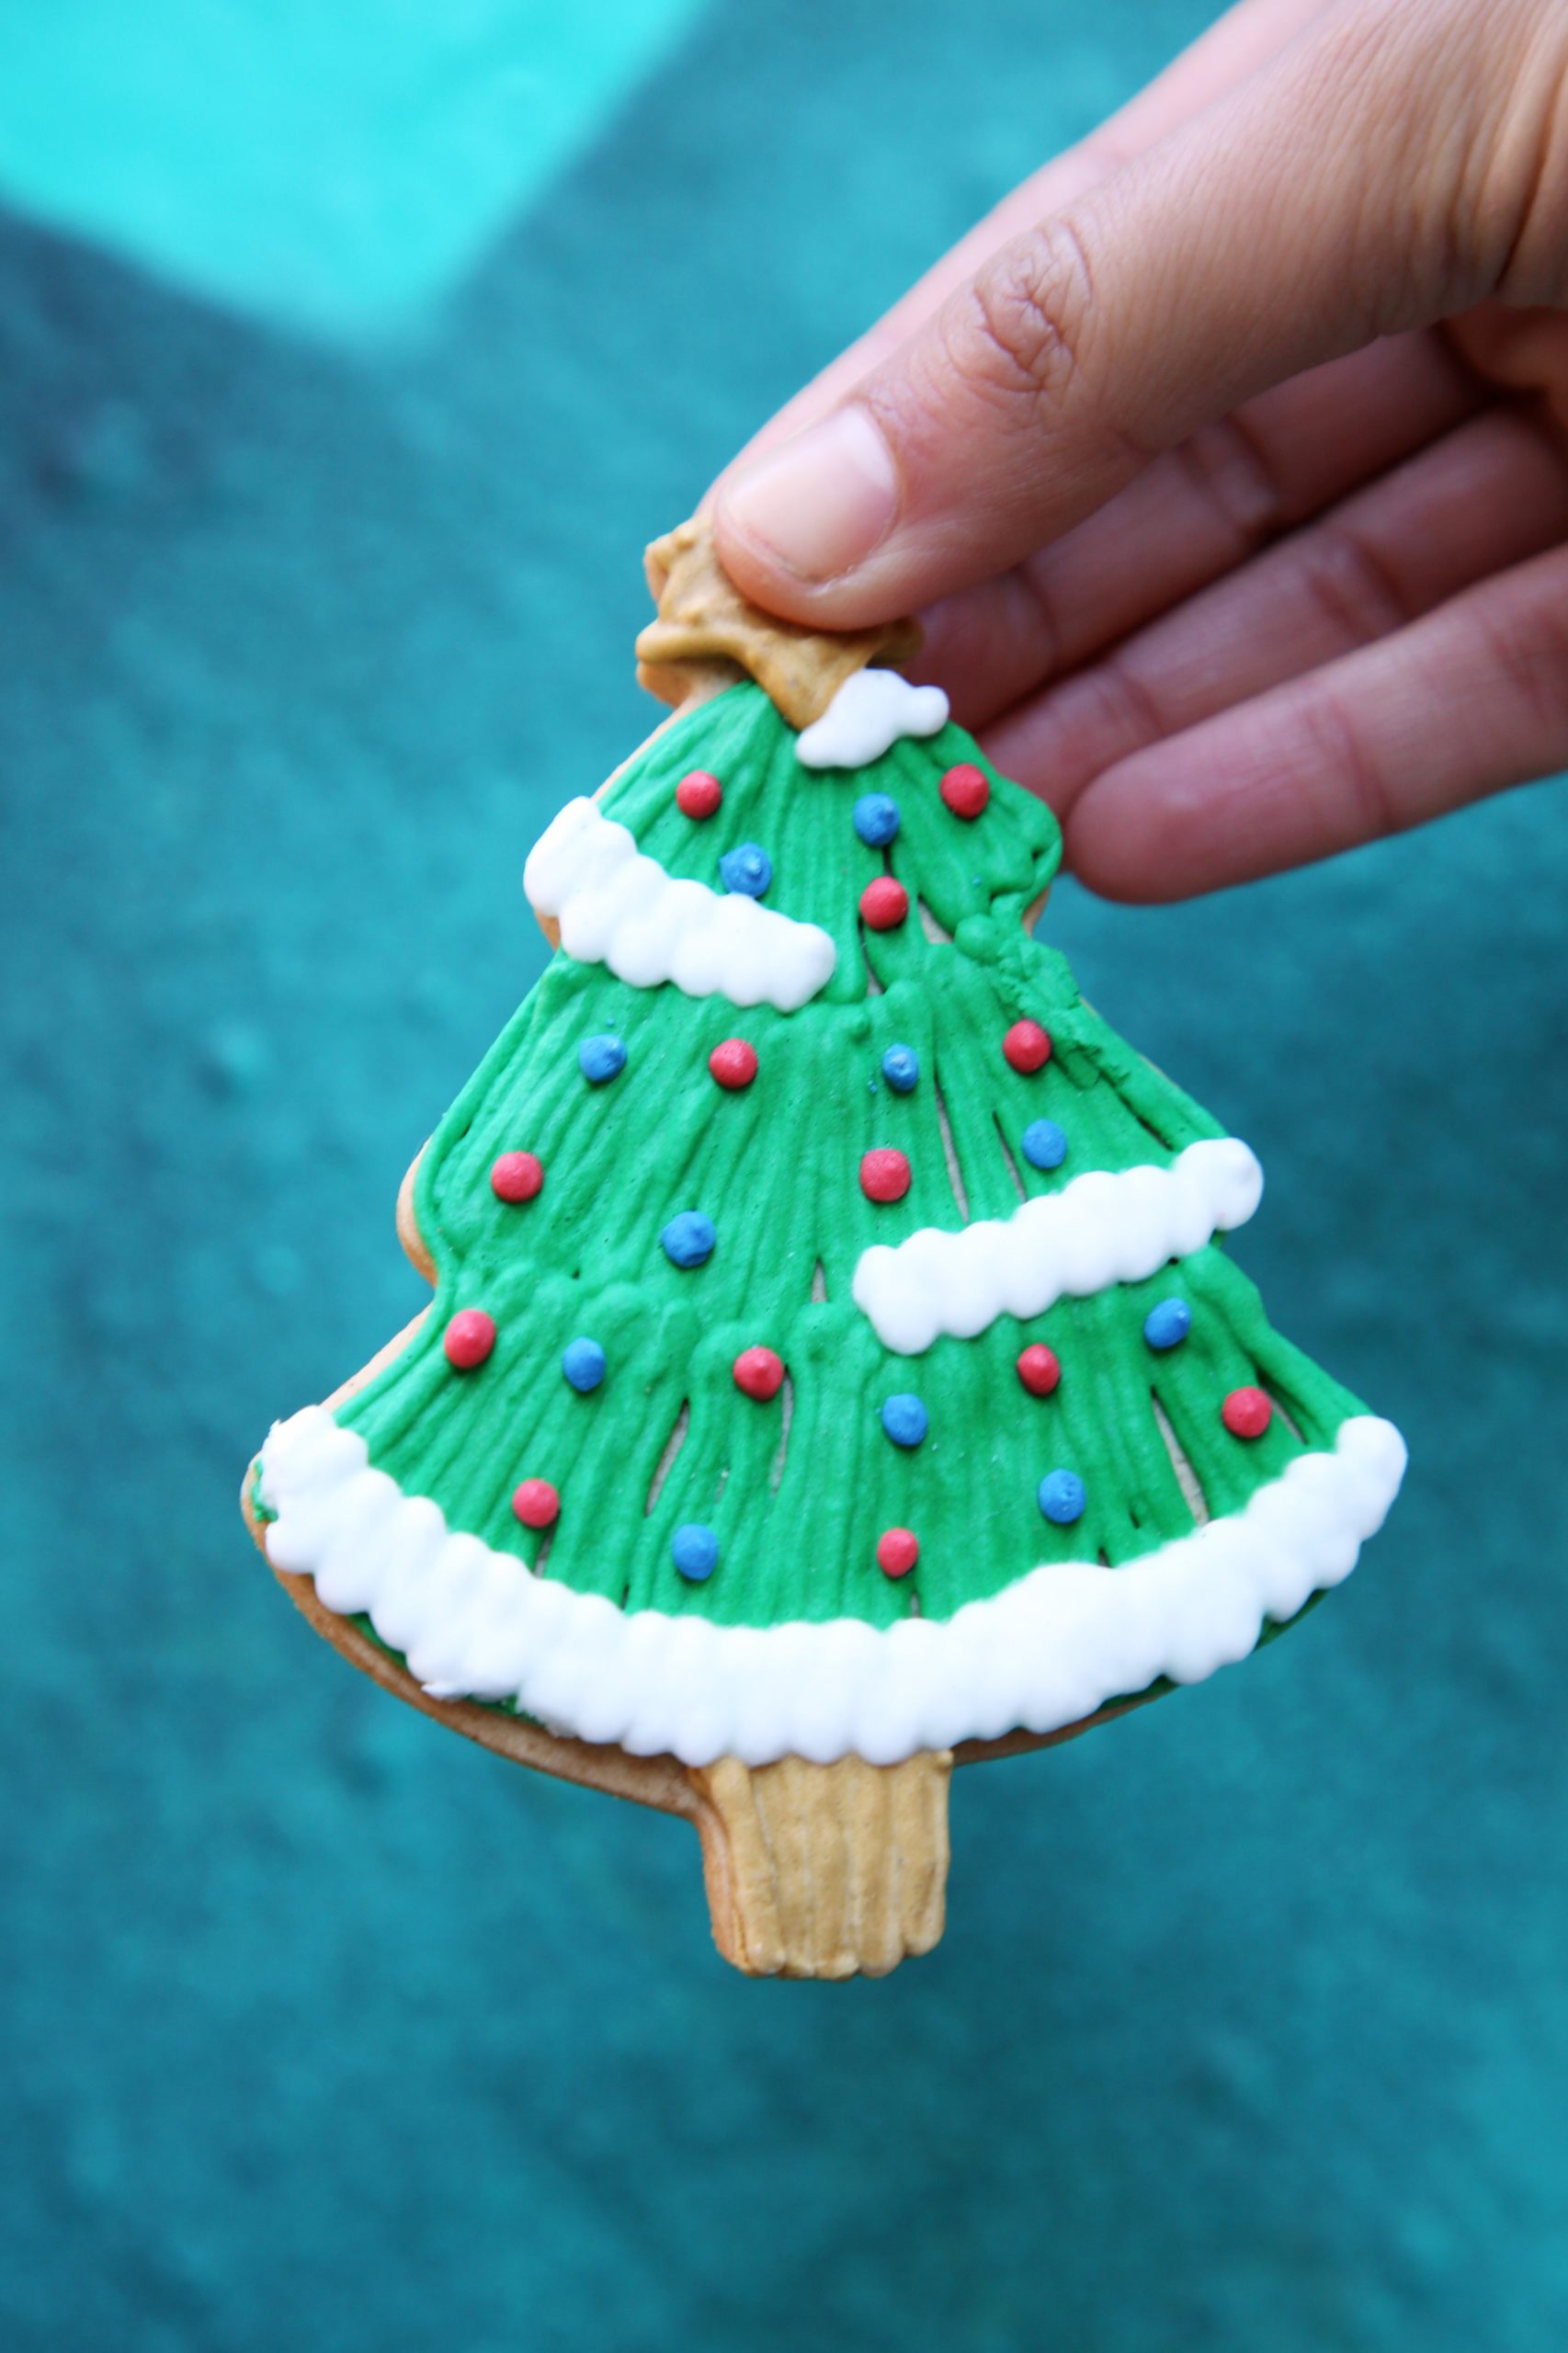 <img src="iced.jpg" alt="iced Christmas tree biscuiteers"/> 